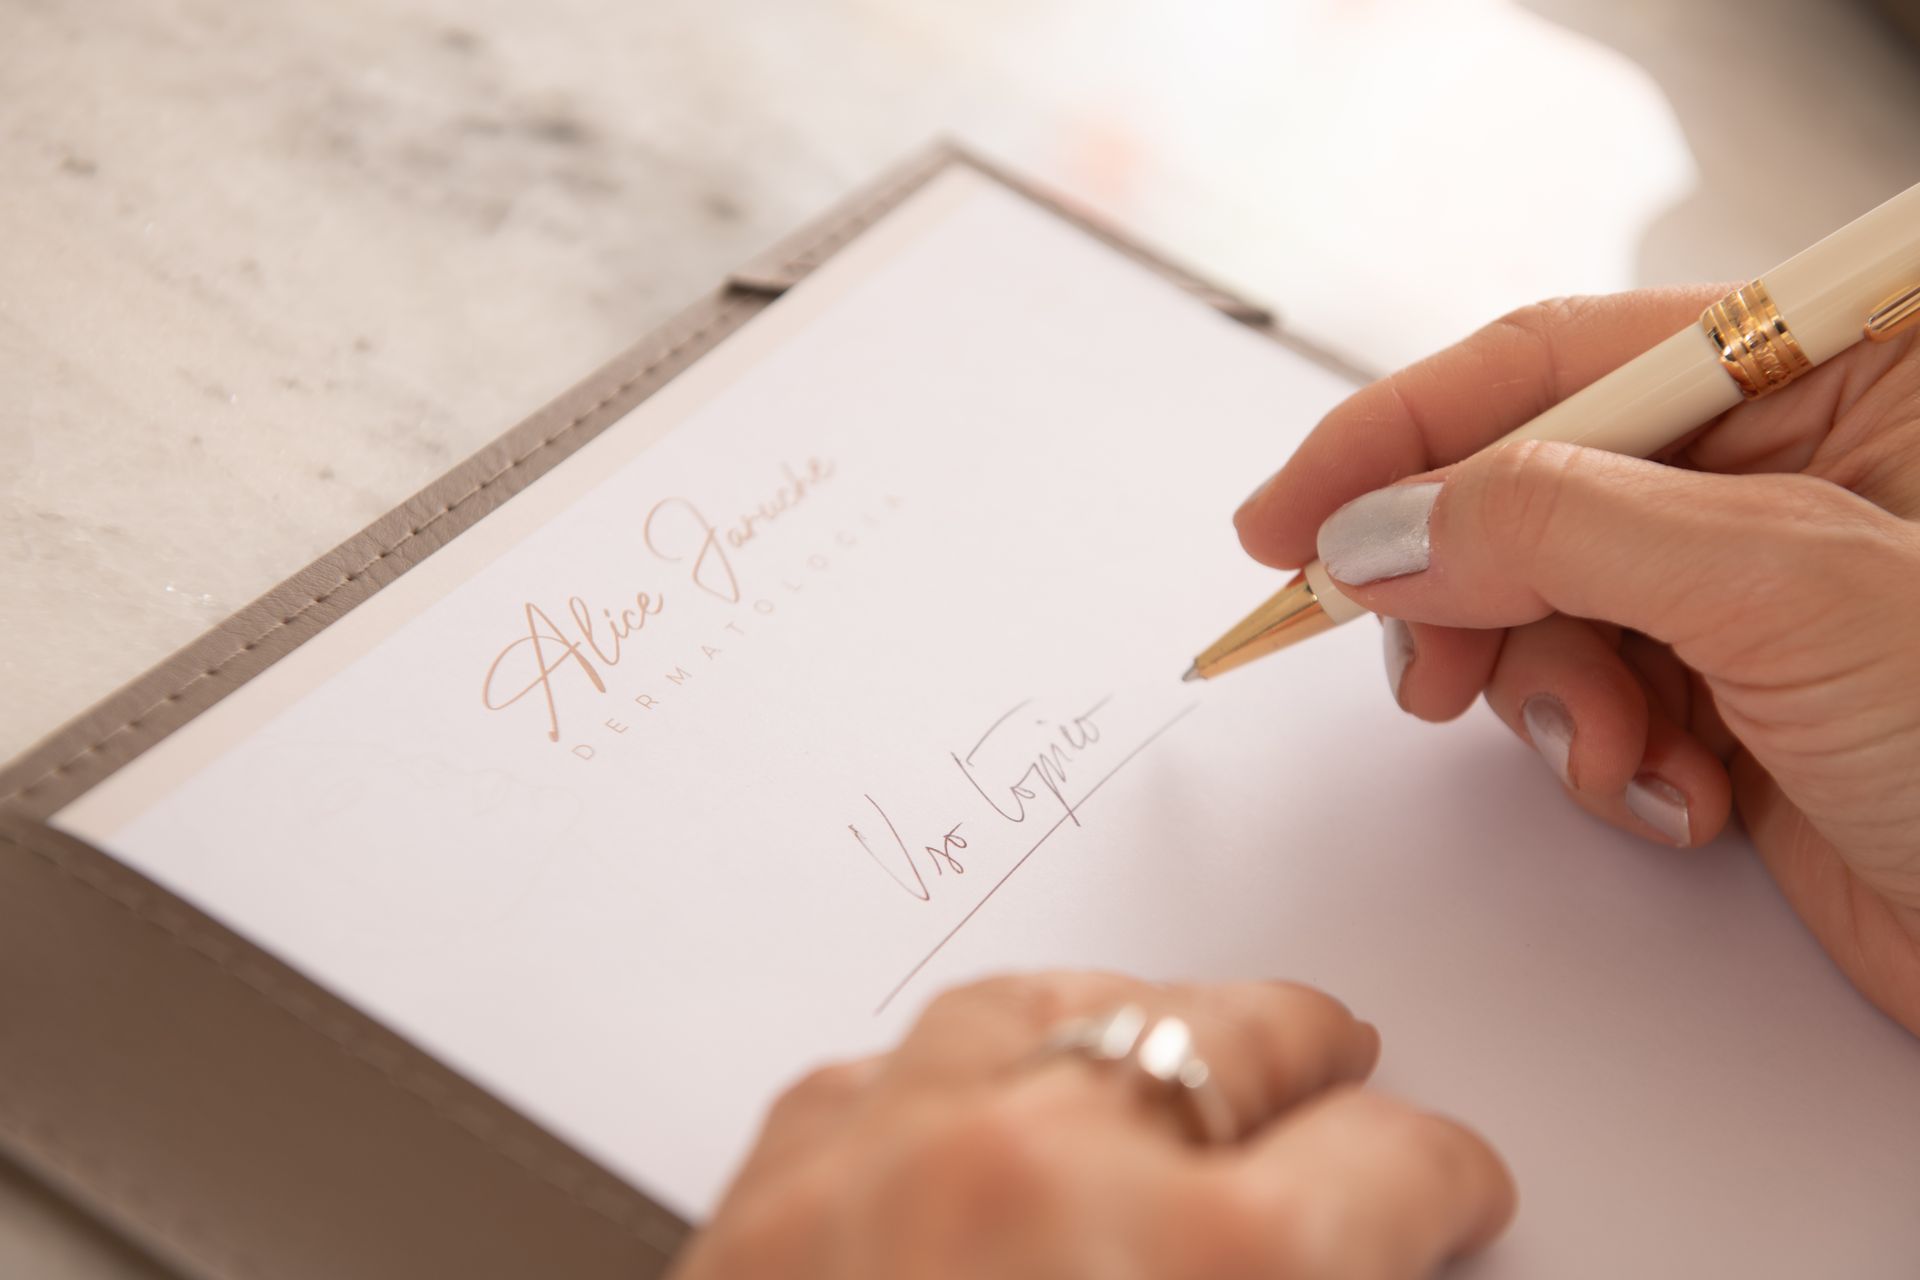 Uma mulher está escrevendo em um pedaço de papel com uma caneta.